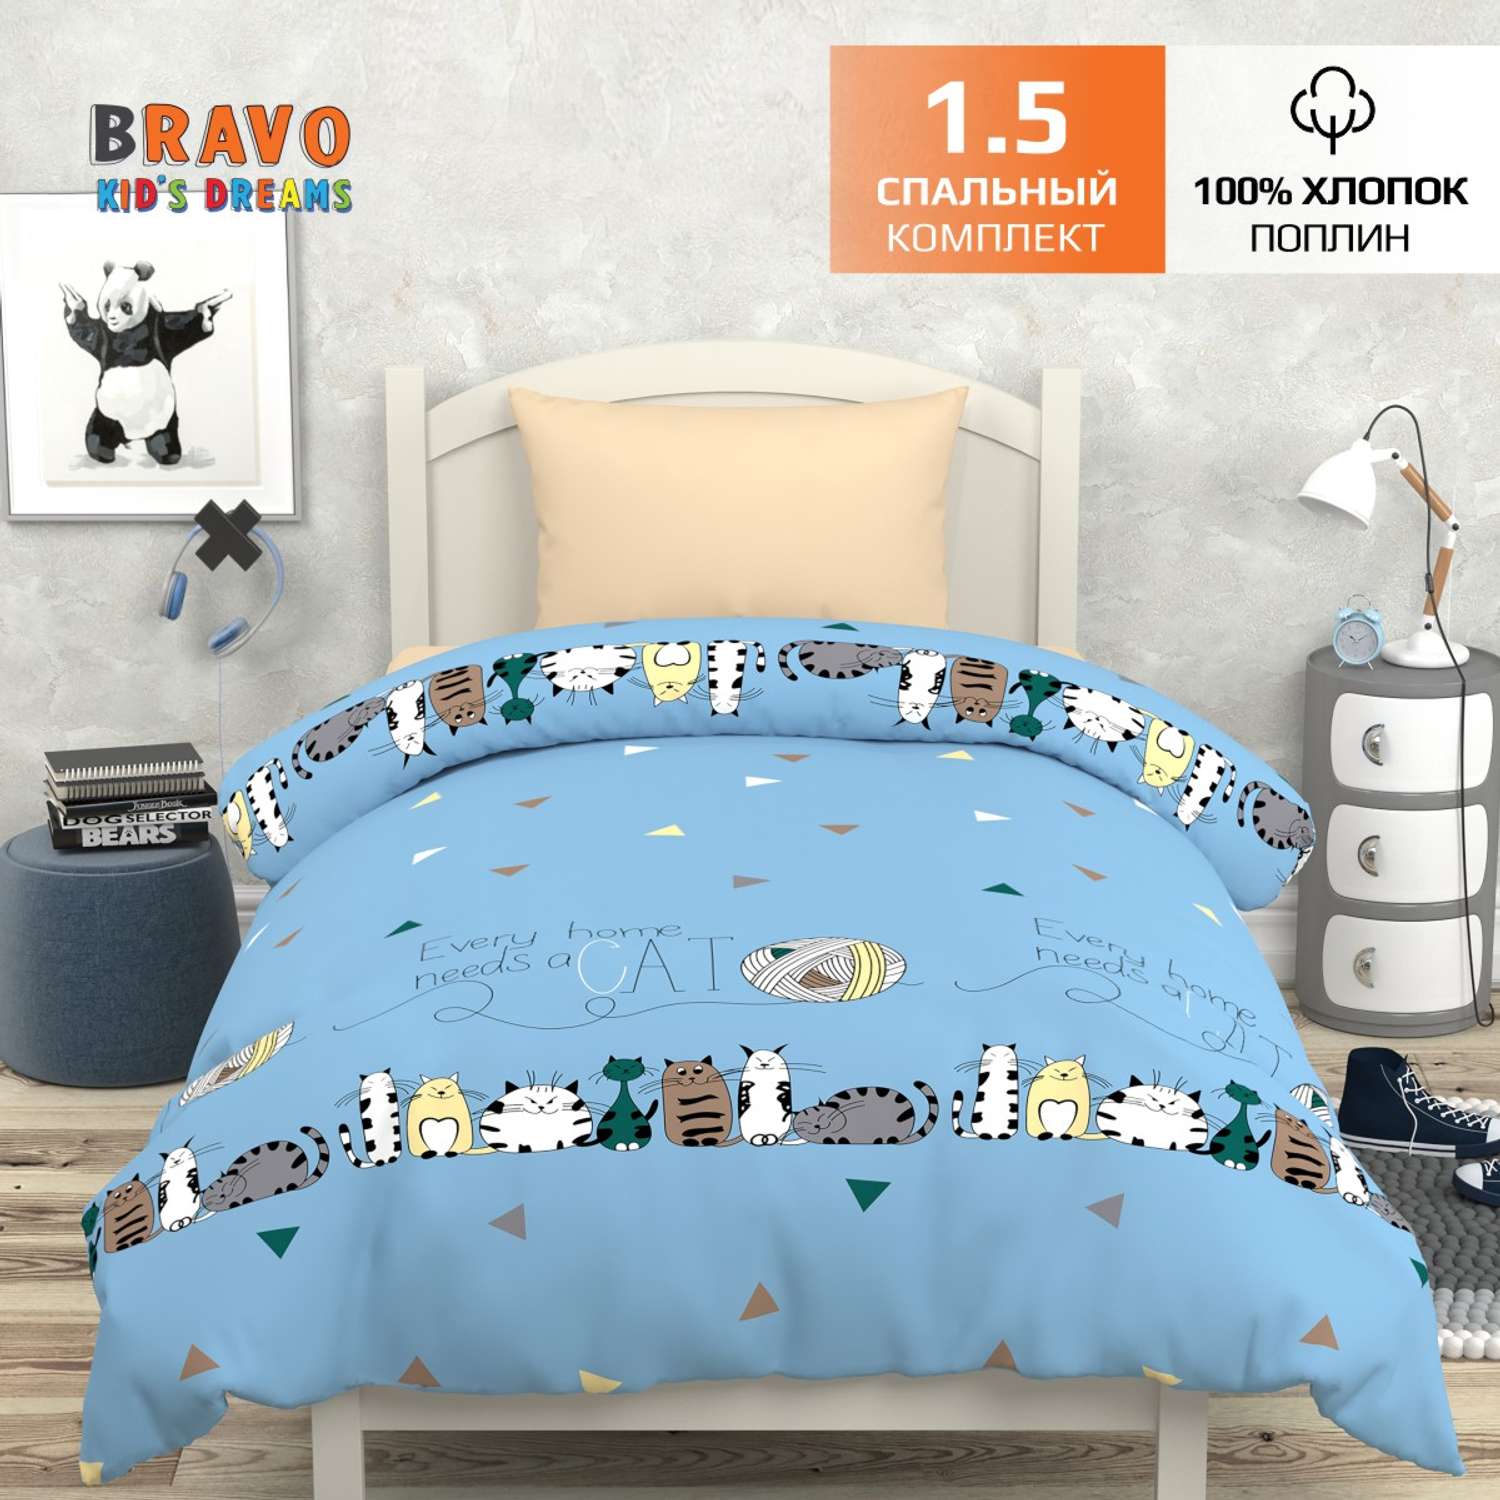 Комплект постельного белья BRAVO kids dreams Котики 1.5 спальный простыня на резинке 90х200 - фото 2